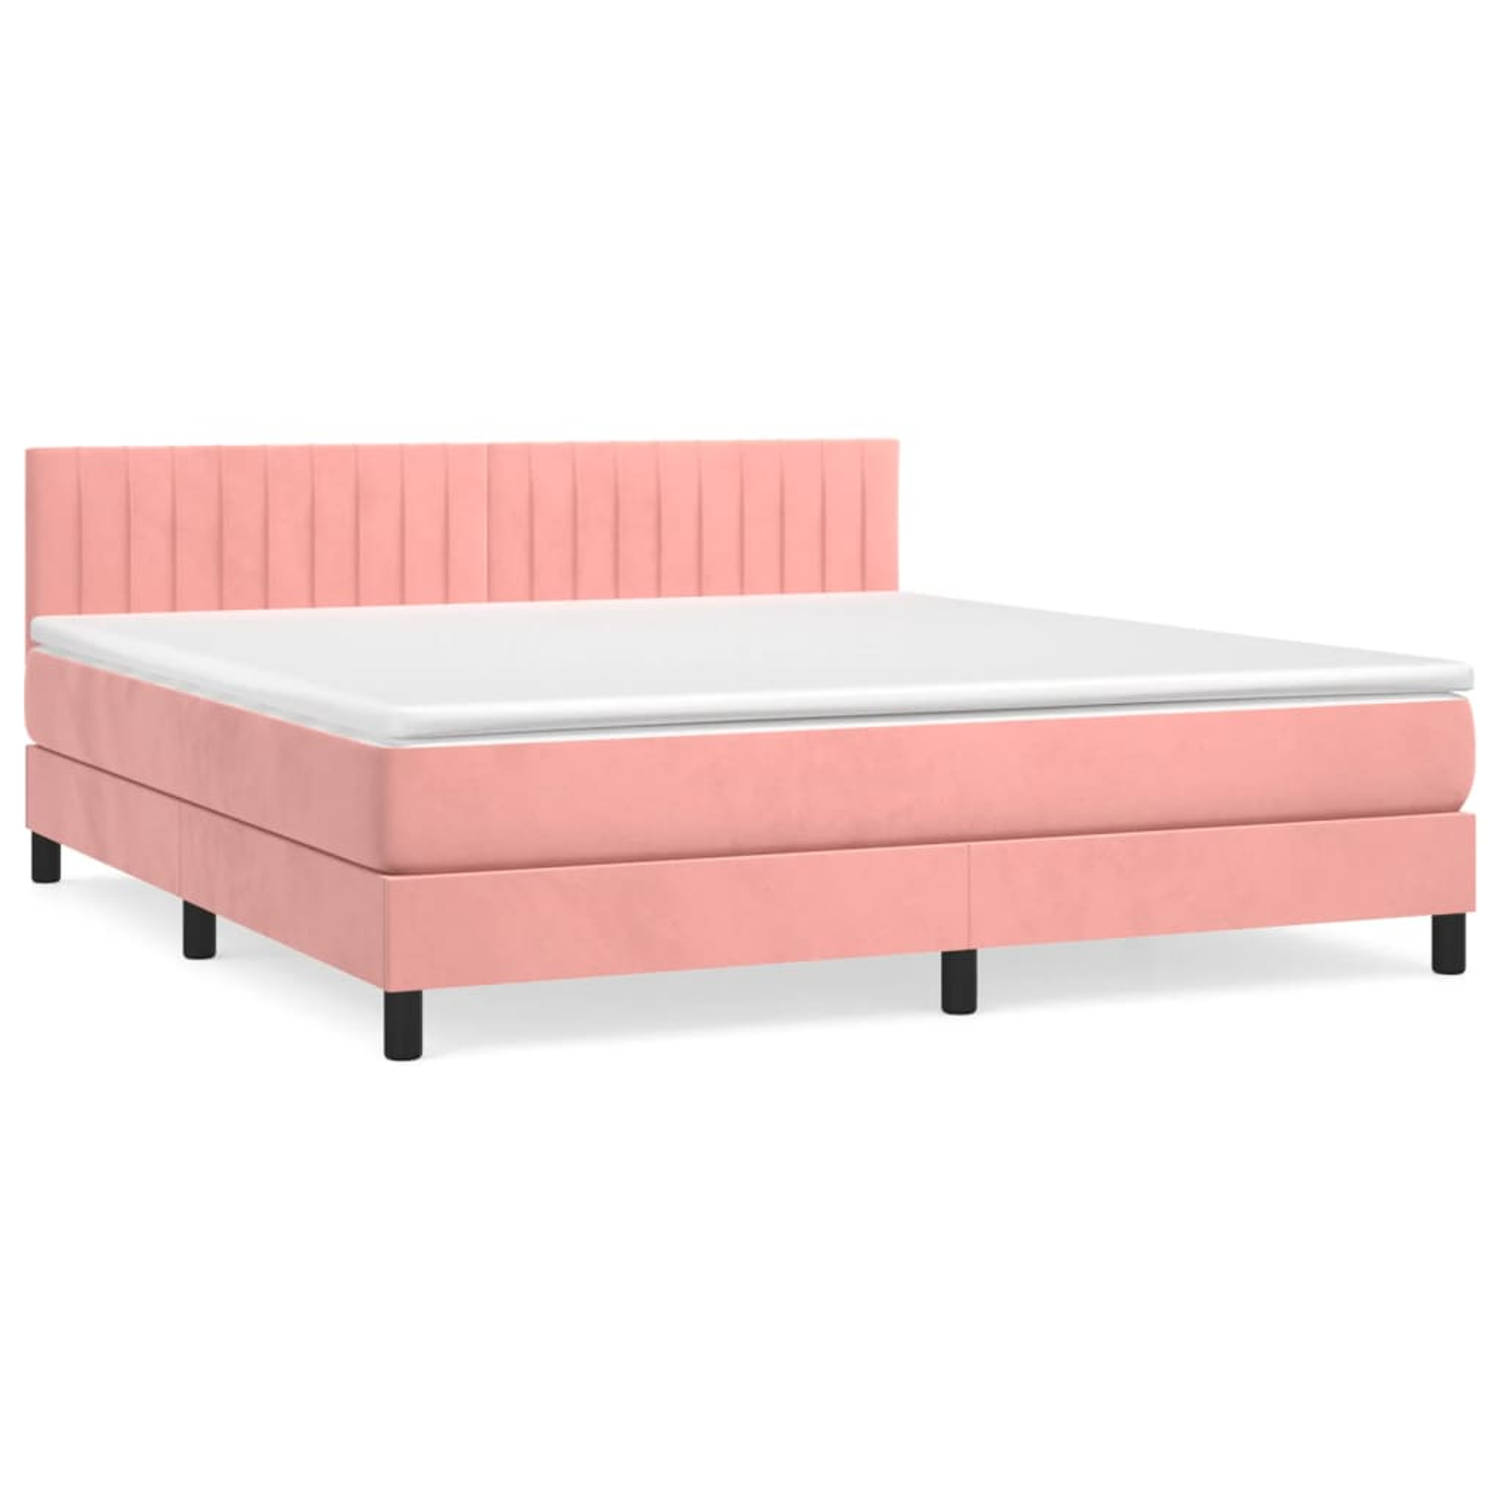 The Living Store Boxspringbed - Zacht fluwelen bed met praktisch hoofdbord - Pocketvering matras voor middelharde ondersteuning - Huidvriendelijk topmatras - Kleur- roze - Afmeting